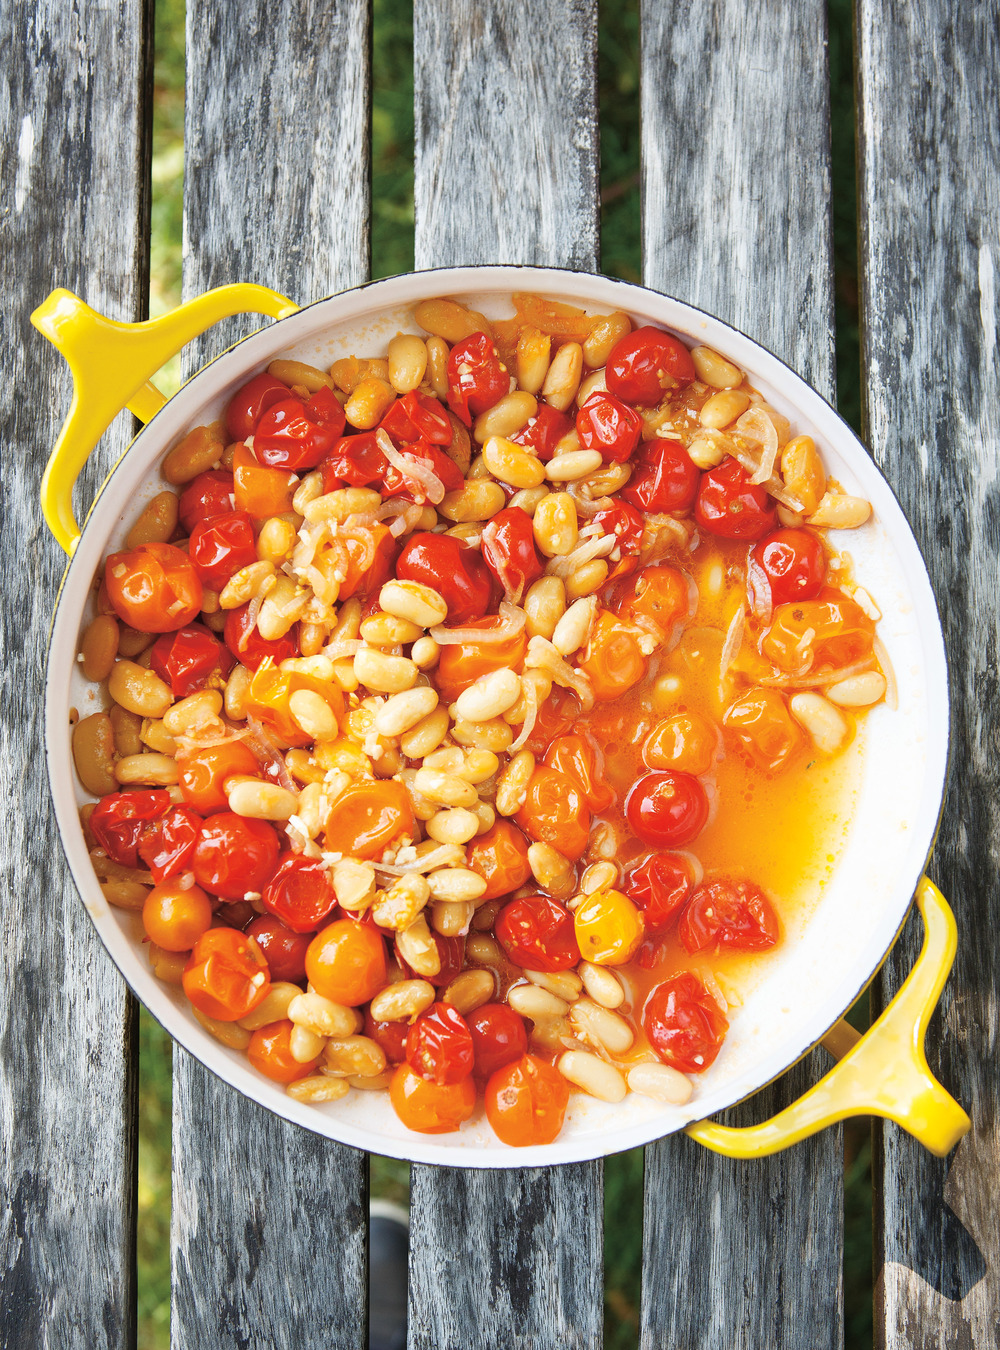 Recette haricots, tomates et épices - Marie Claire